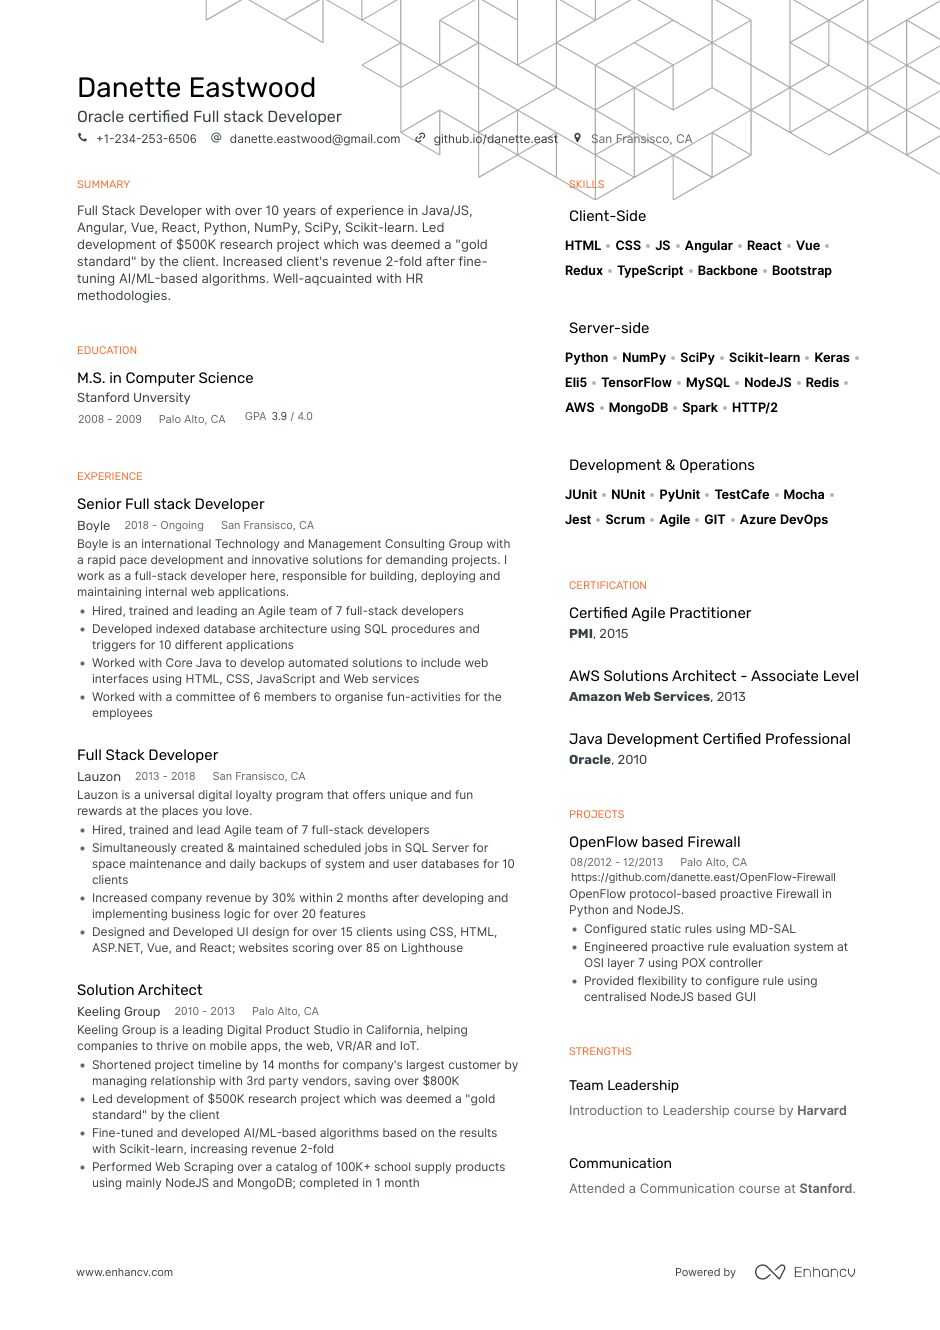 Resume Template for Full Stack Developer Full Stack Developer Resume Examples & Writing Guide for 2021